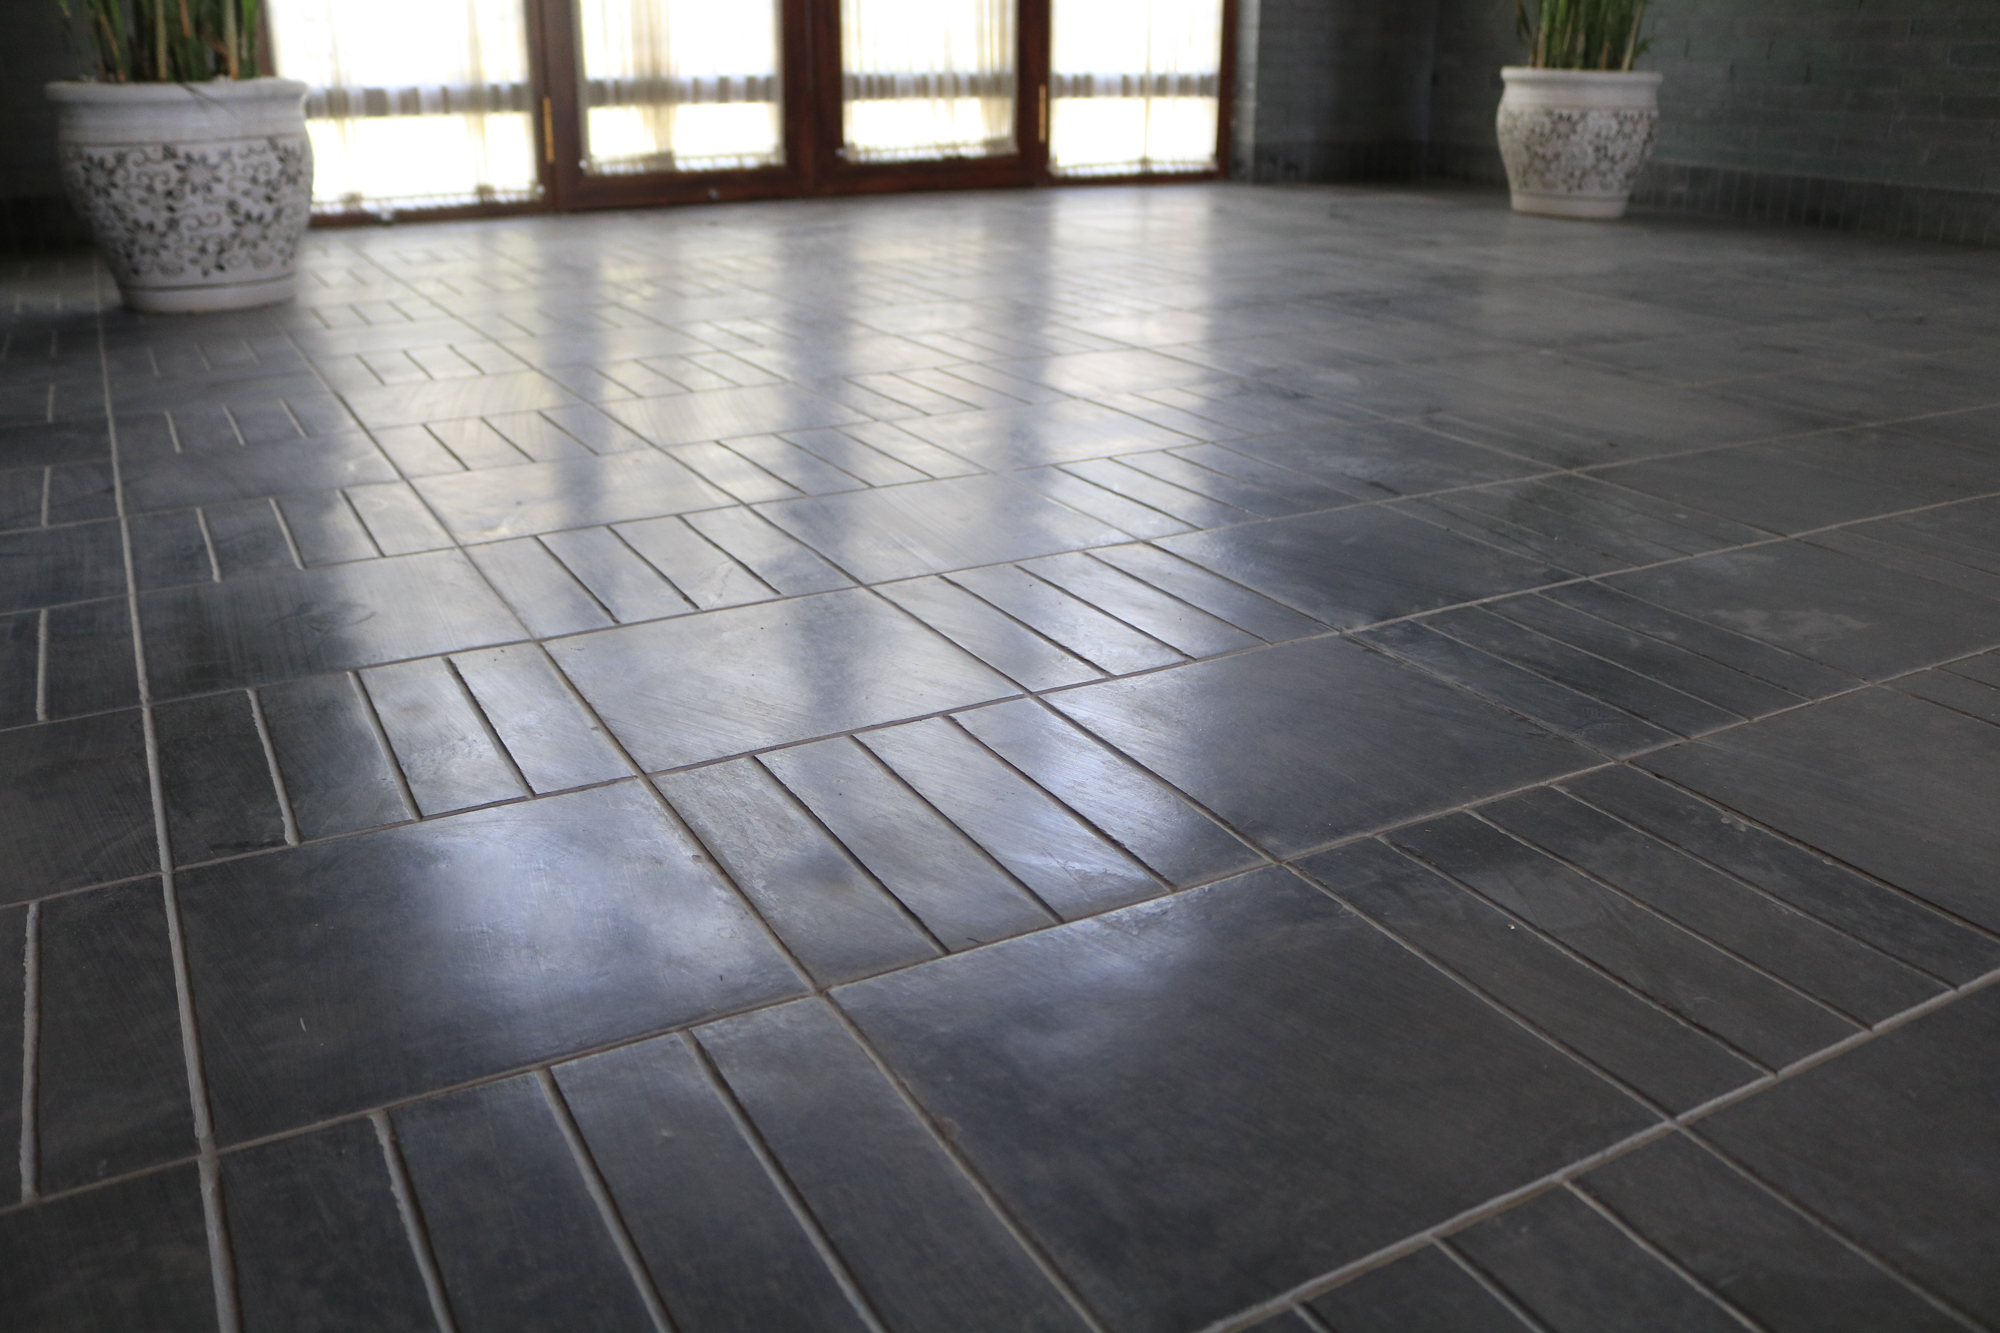 负重强,高耐腐 也可用于室内,都与建筑同寿命 室内地面铺装 唐语青砖